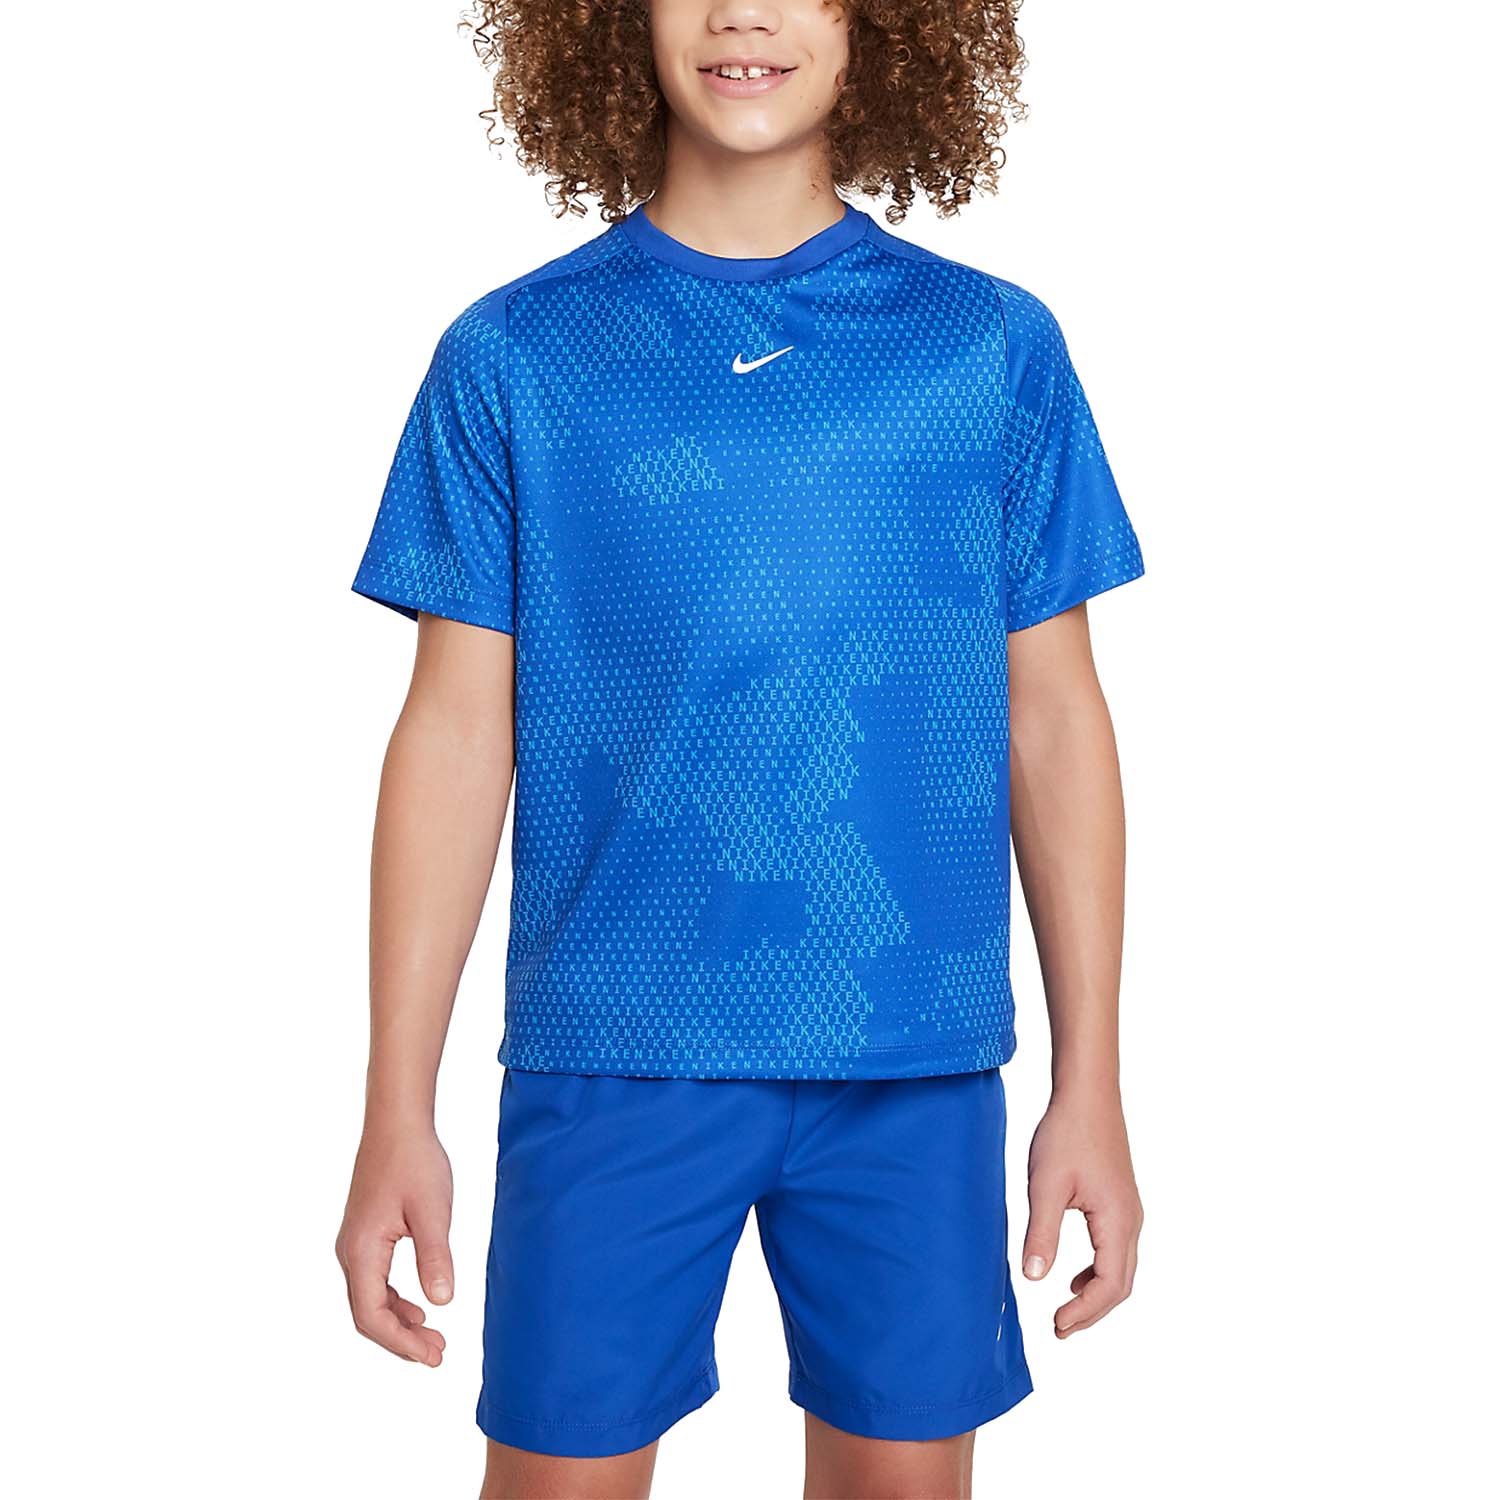 Nike Dri-FIT Multi Camo T-Shirt Boy - Game Royal/White